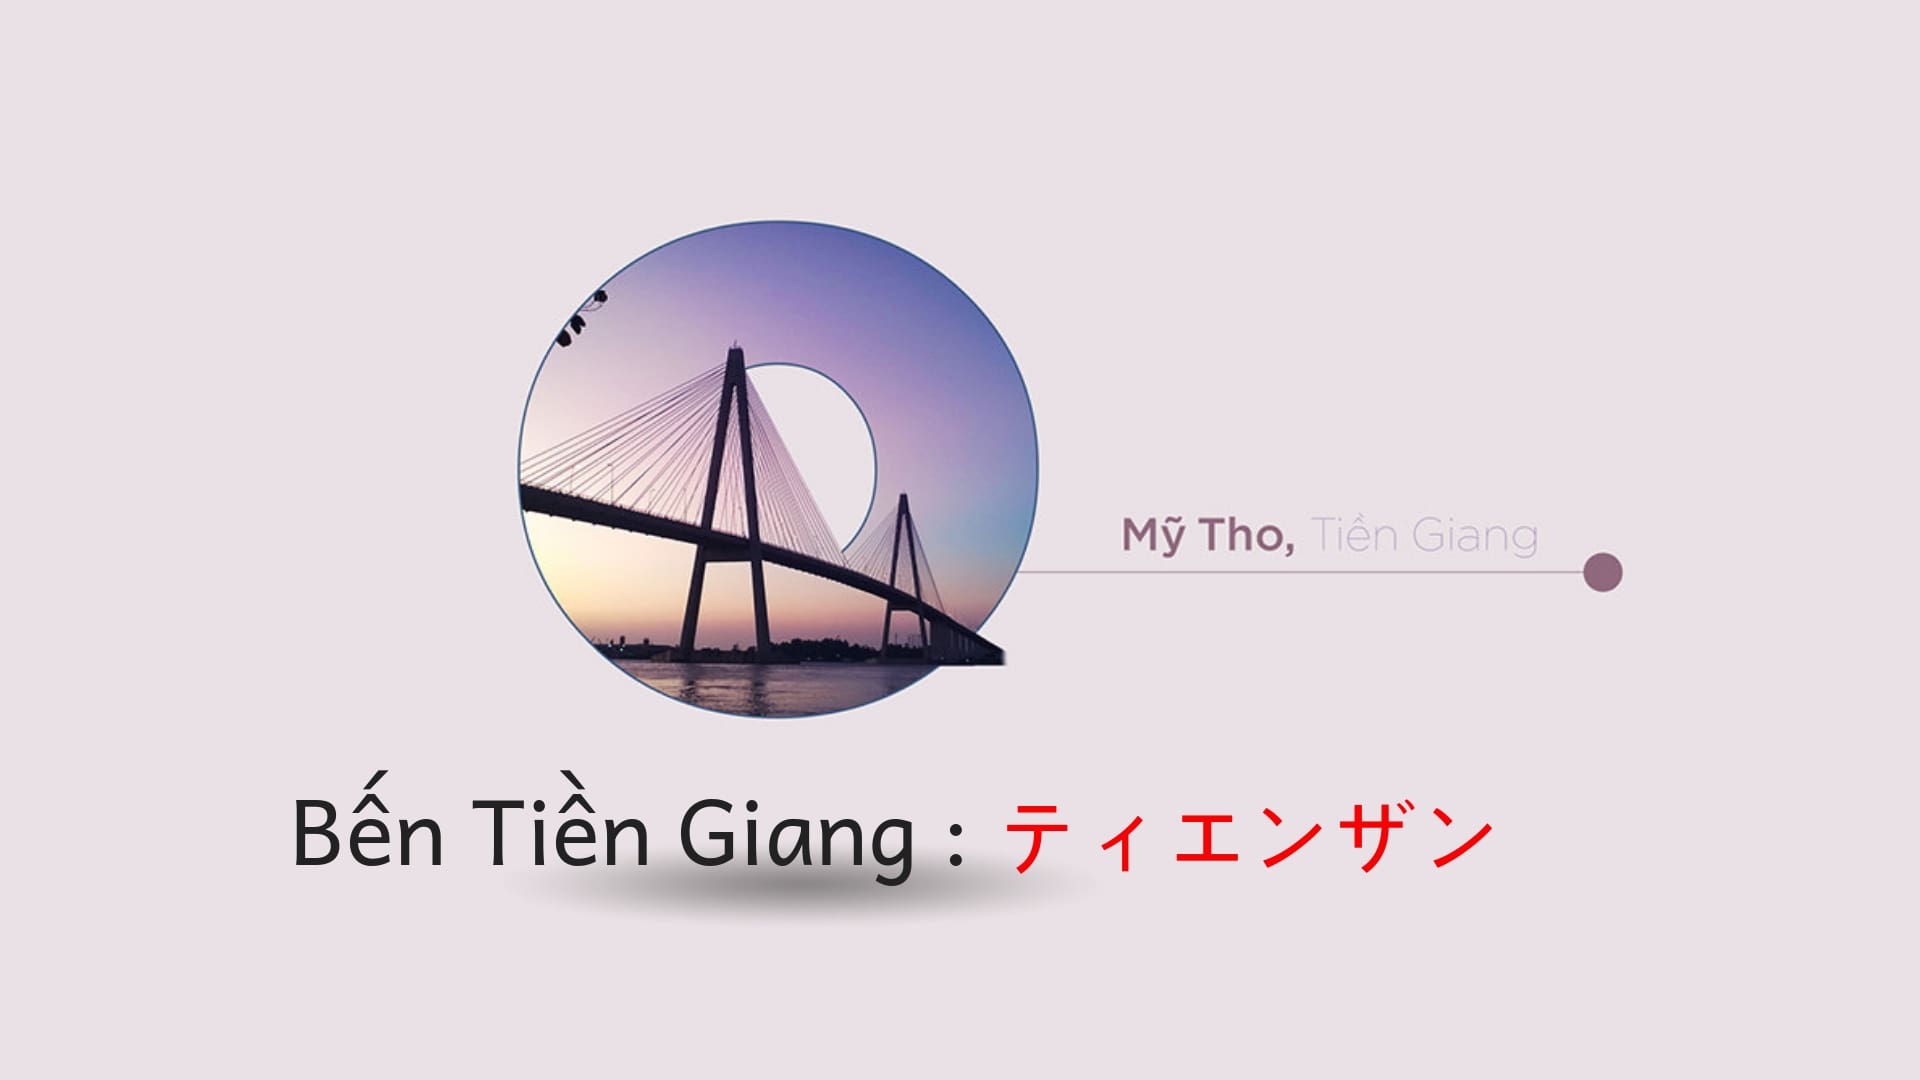 Tên tiếng Nhật của 63 tỉnh thành Việt Nam CỰC DỄ, bạn đã biết chưa?